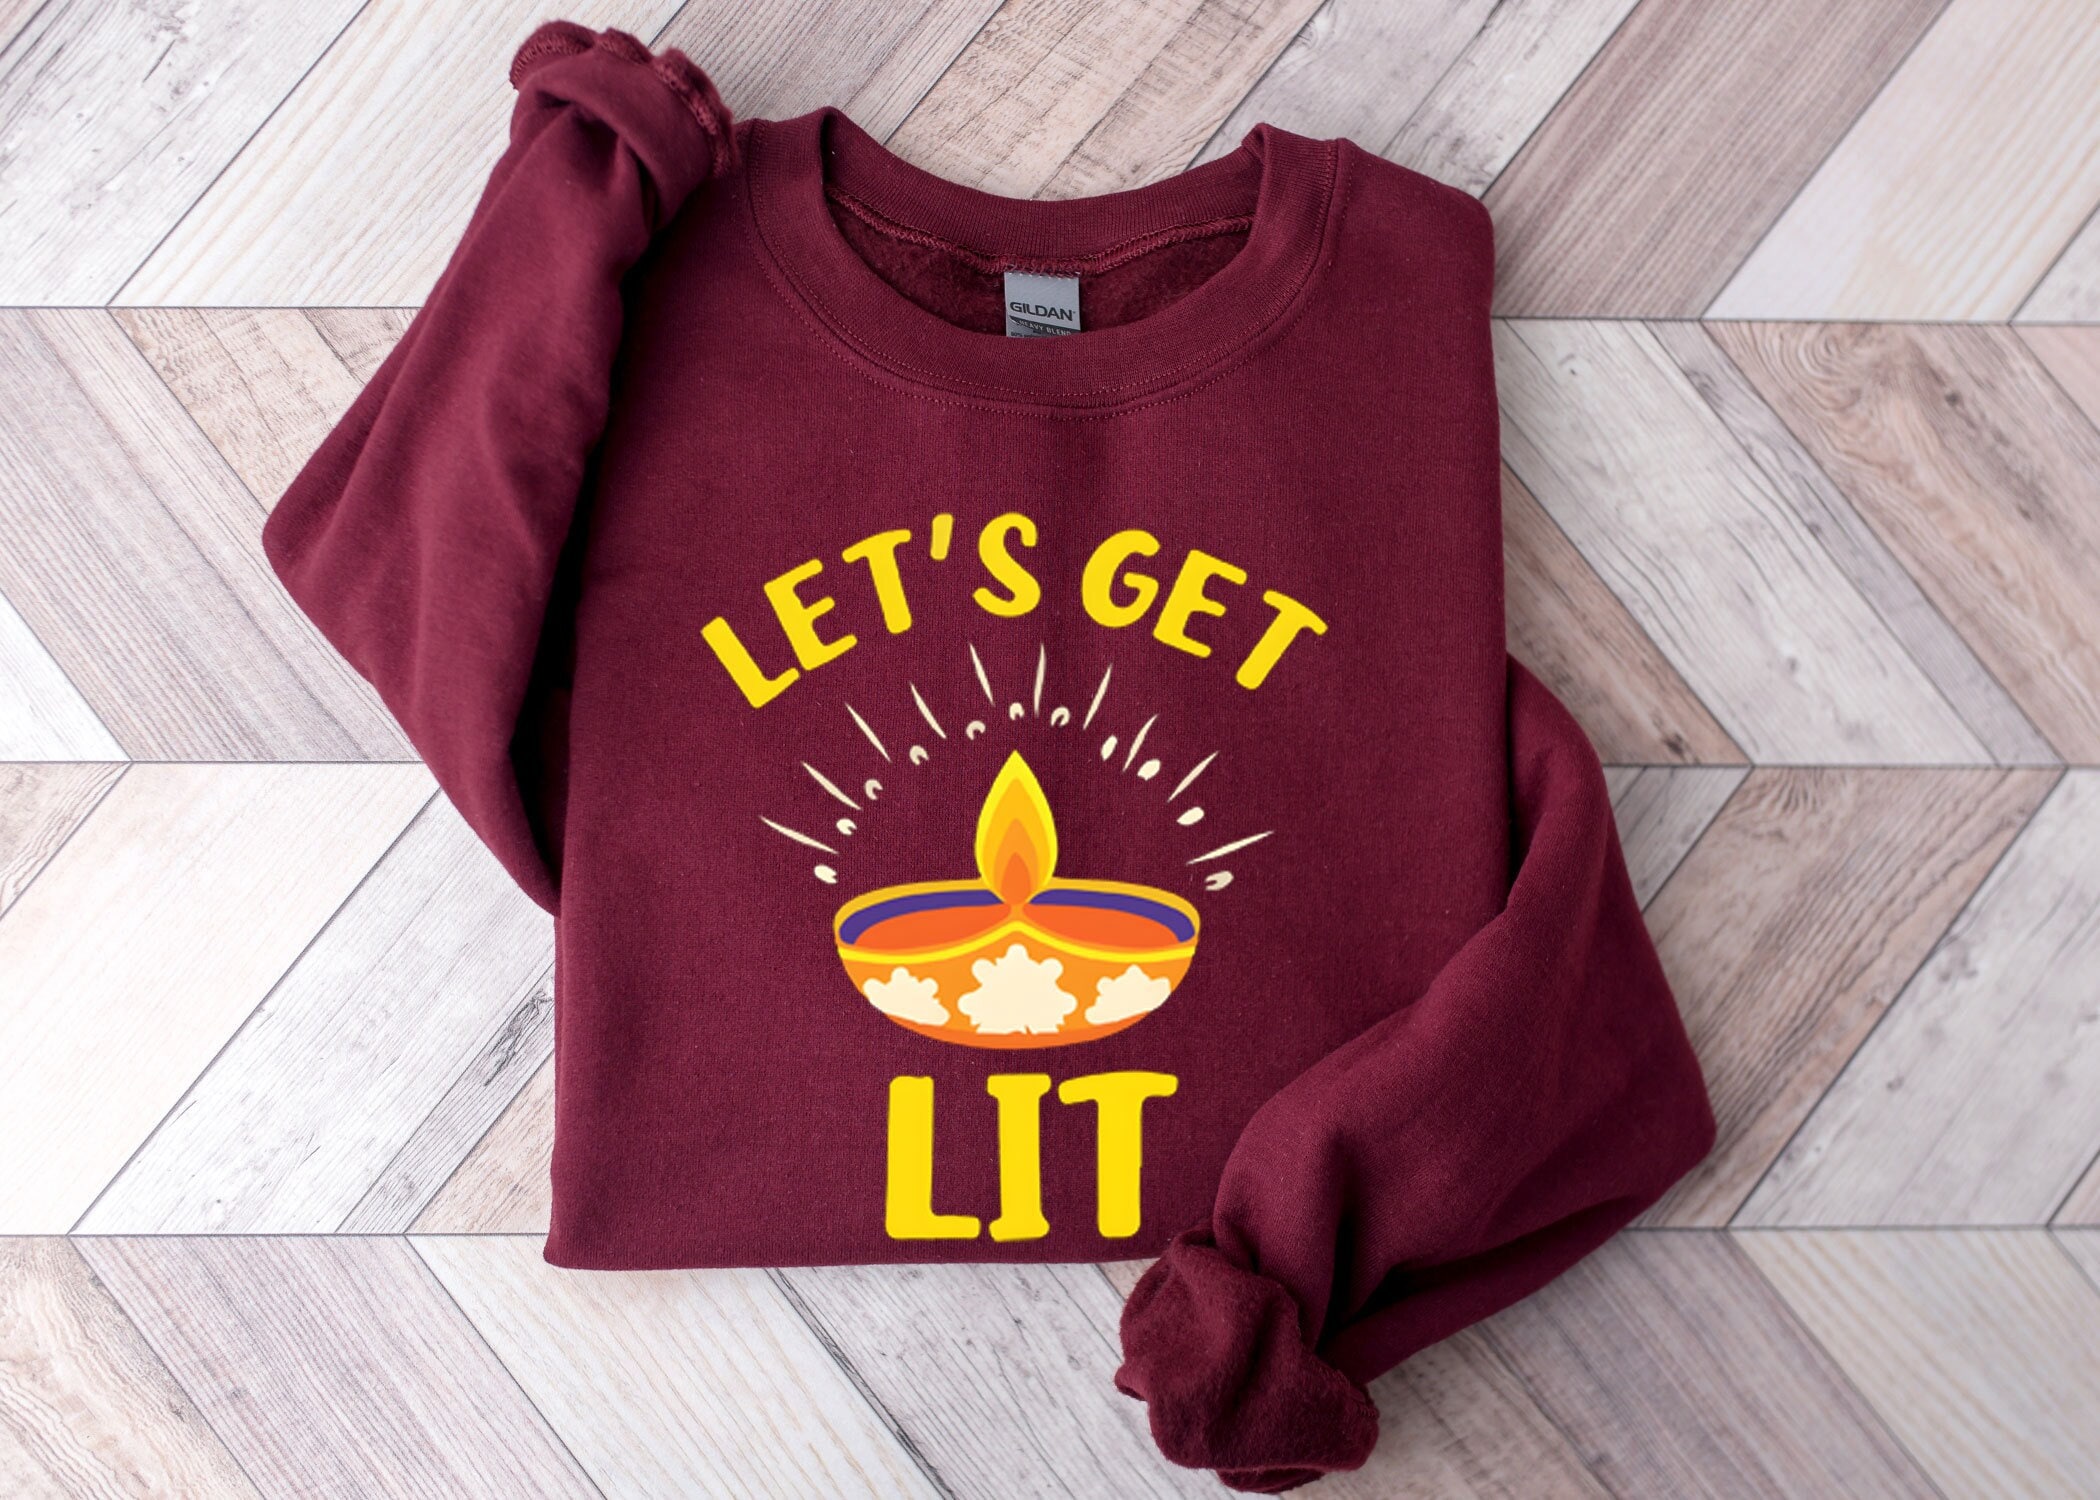 Louis Litt let's get Litt up Christmas shirt, hoodie, sweater, longsleeve  and V-neck T-shirt